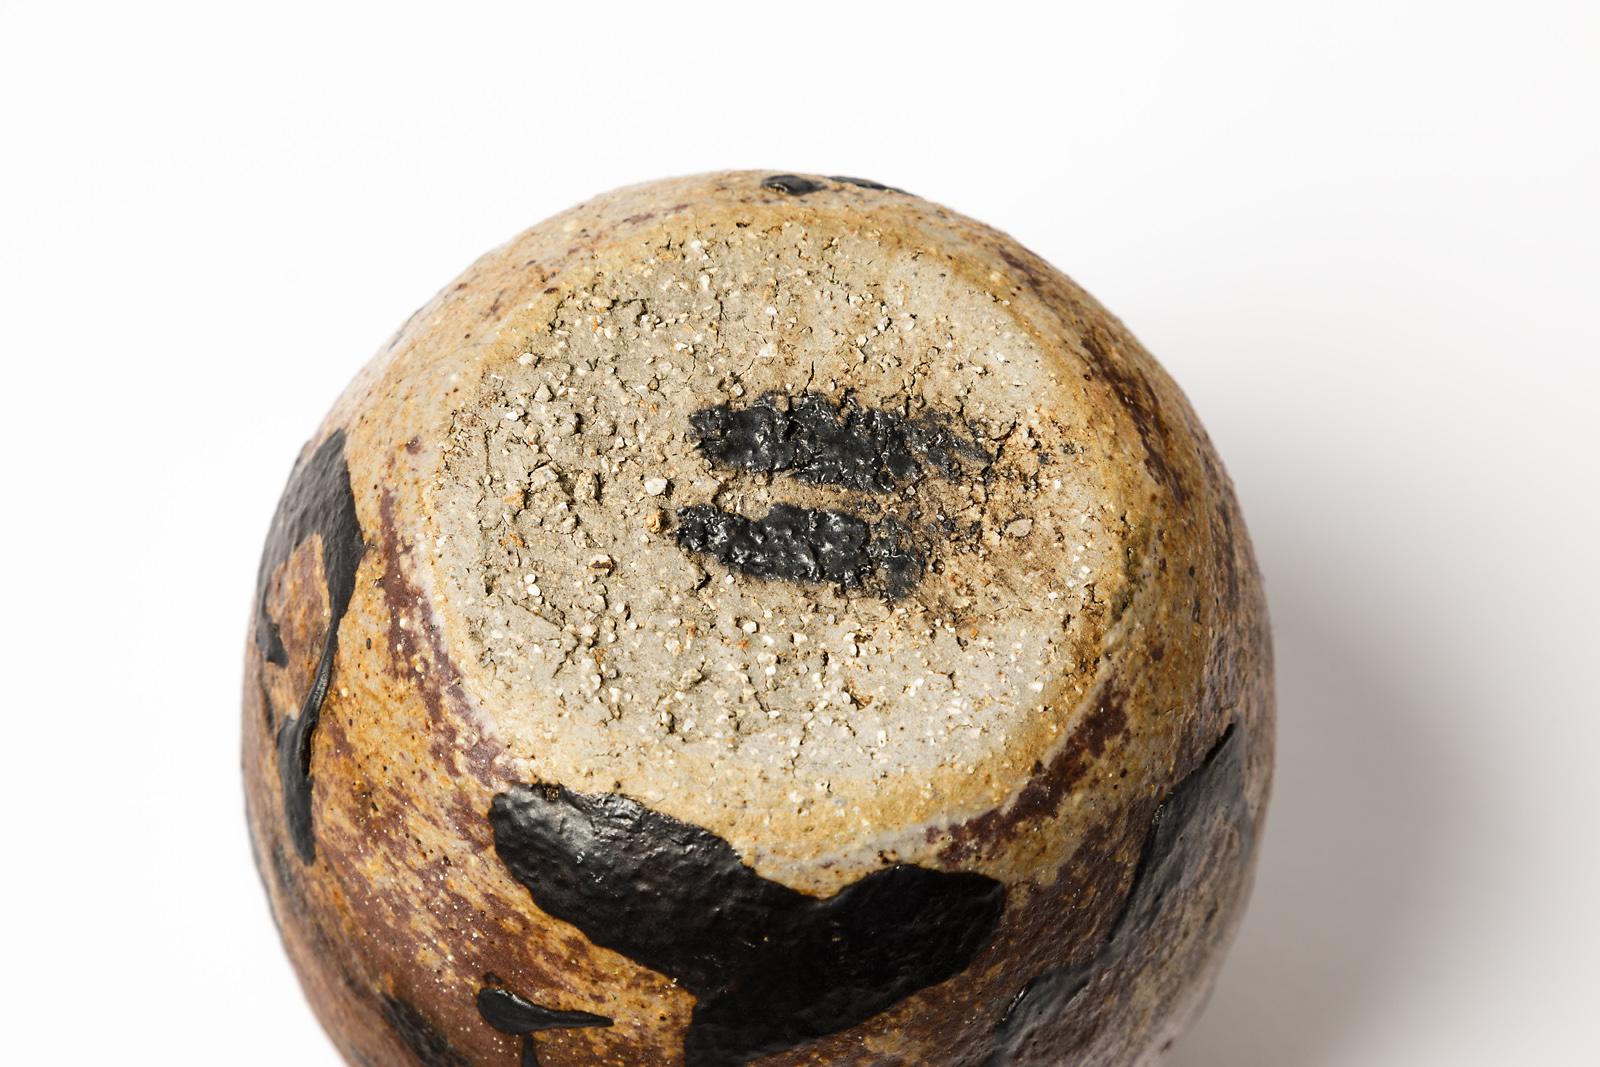 David Whitehead

Vase en céramique grès réalisé à La Borne 

Circa 2000

Pièce unique faite à la main et signée sous la base

Couleurs de la céramique en grès noir et bronze

Mesures : Hauteur 14 cm. Largeur 11 cm.